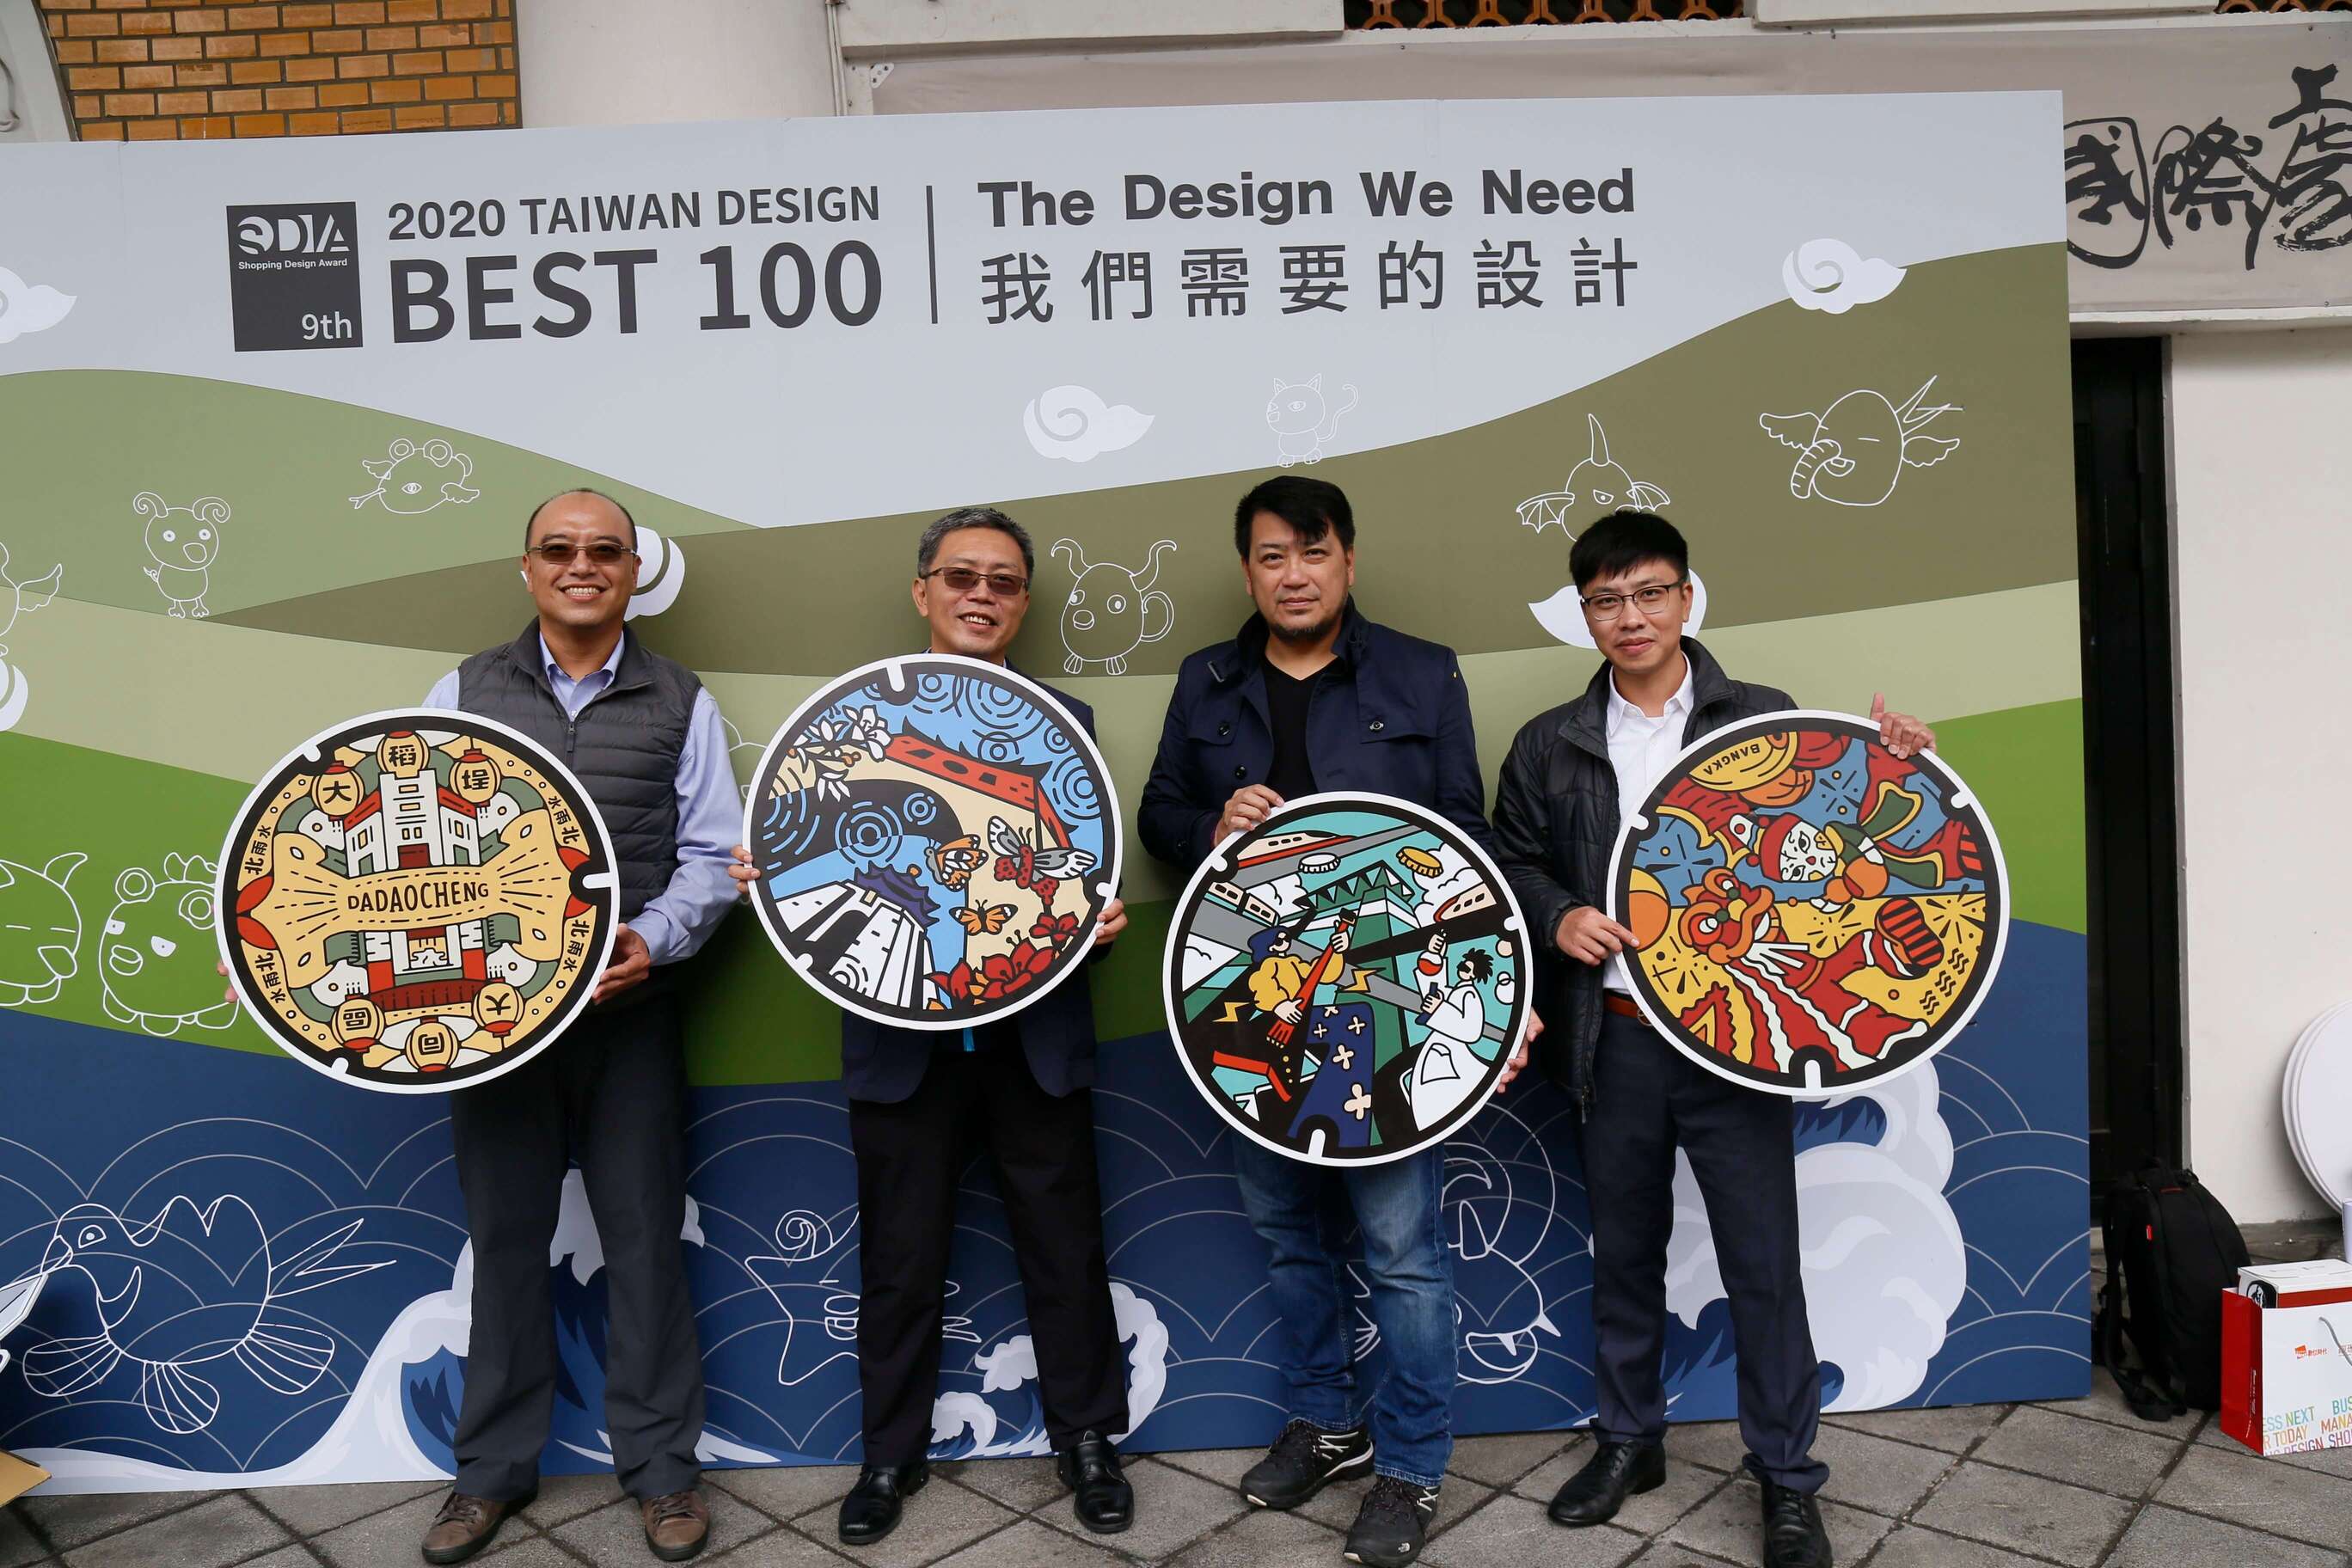 第9屆Shopping Design Award「2020 TAIWAN DESIGN BEST 100」年度在地文化推廣貢獻獎